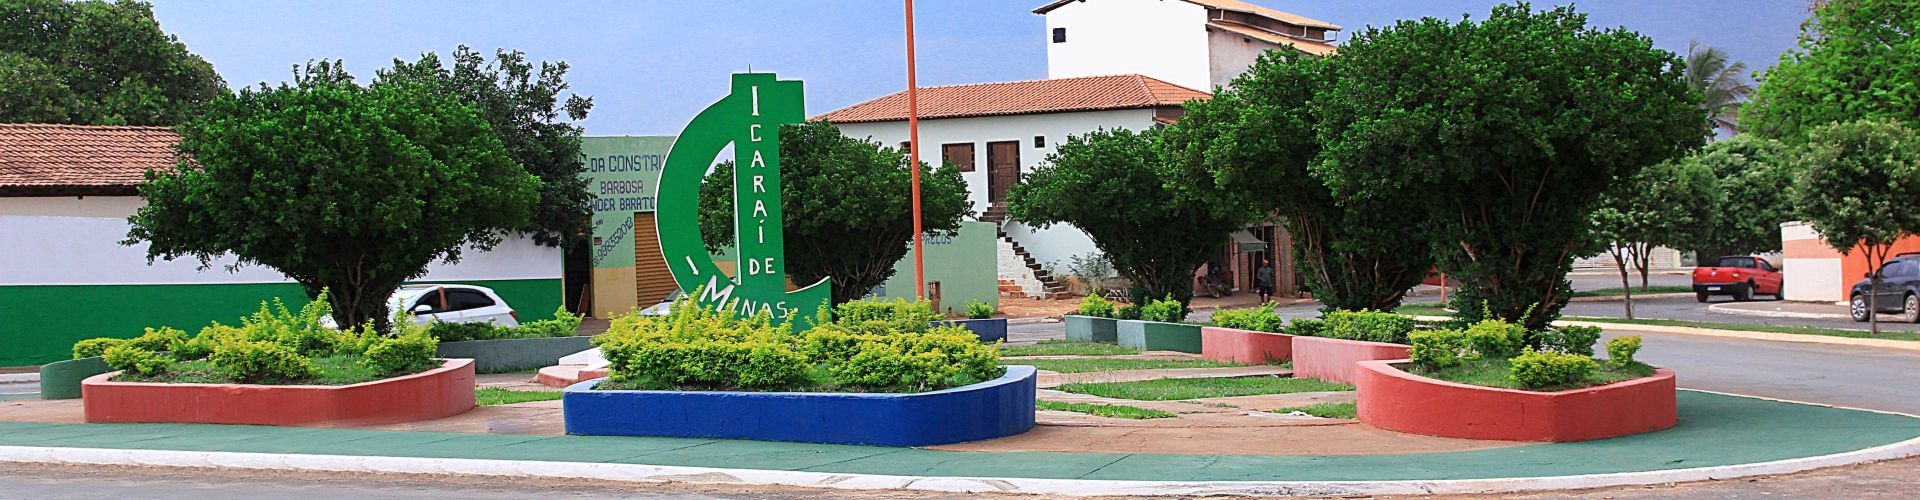 Prefeitura Municipal de Icaraí de Minas